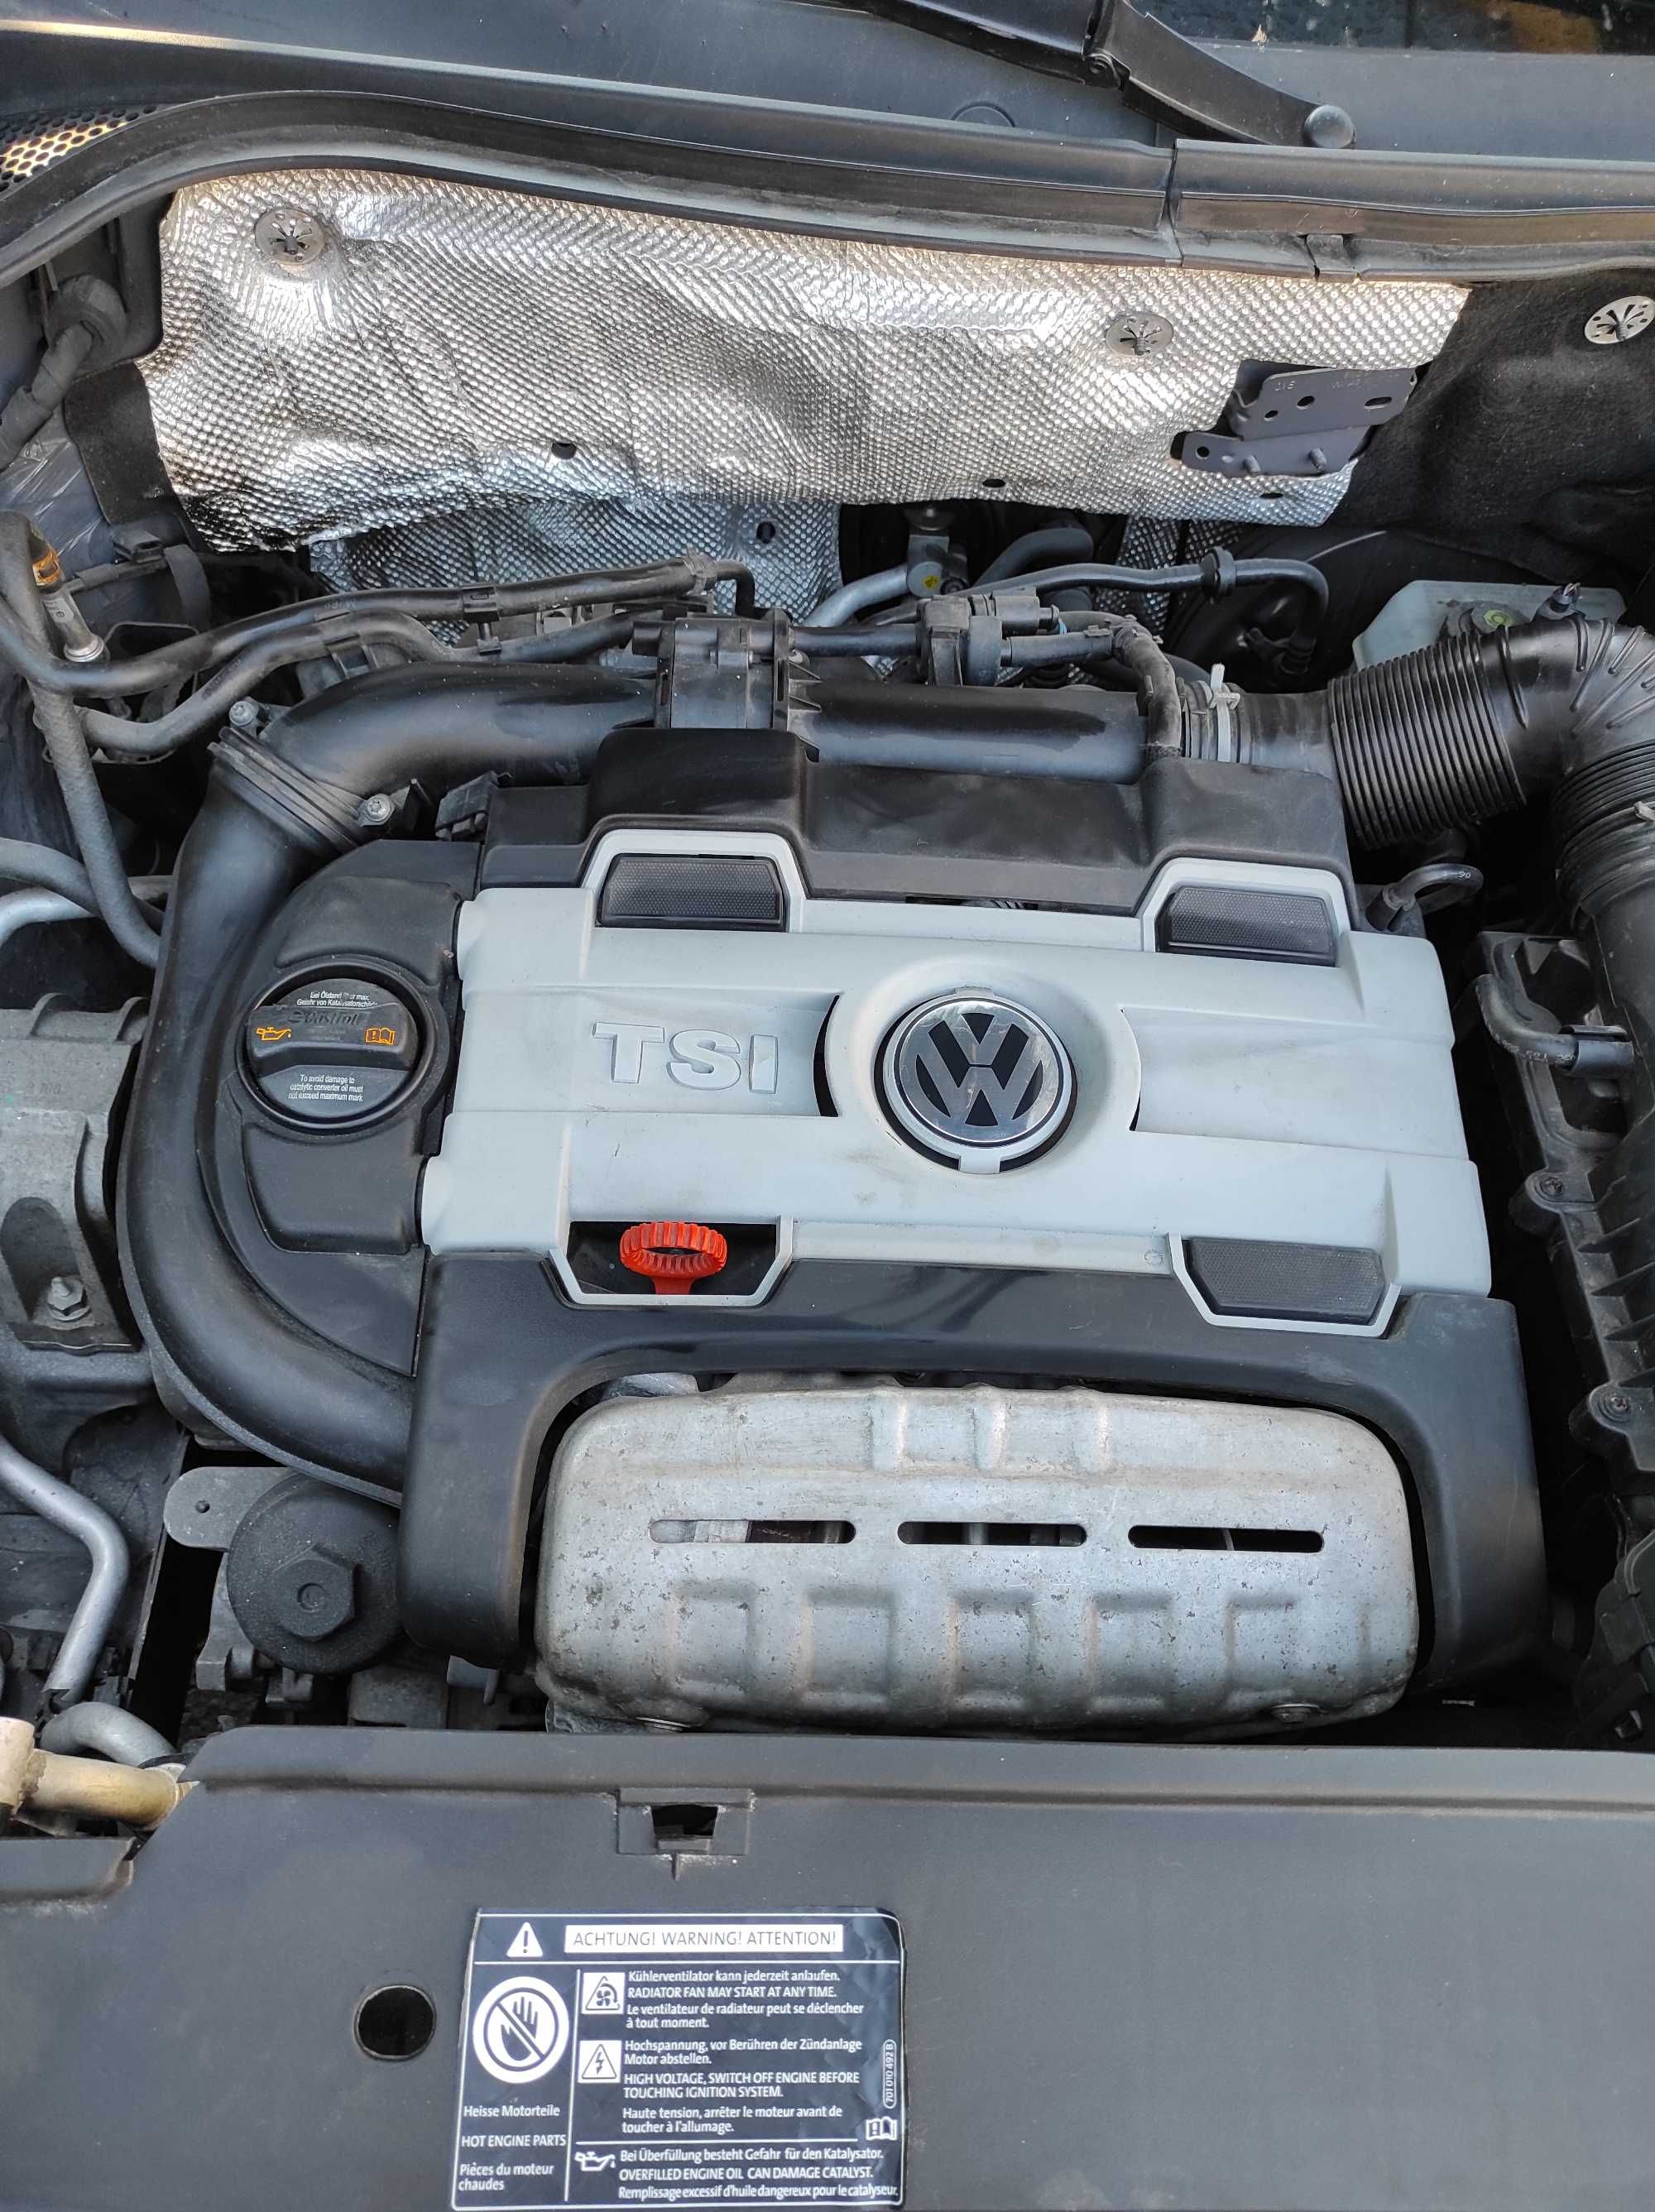 VW Tiguan 1.4 TSI, niski przebieg, wzorowy stan, 2x alu, hak westfalia